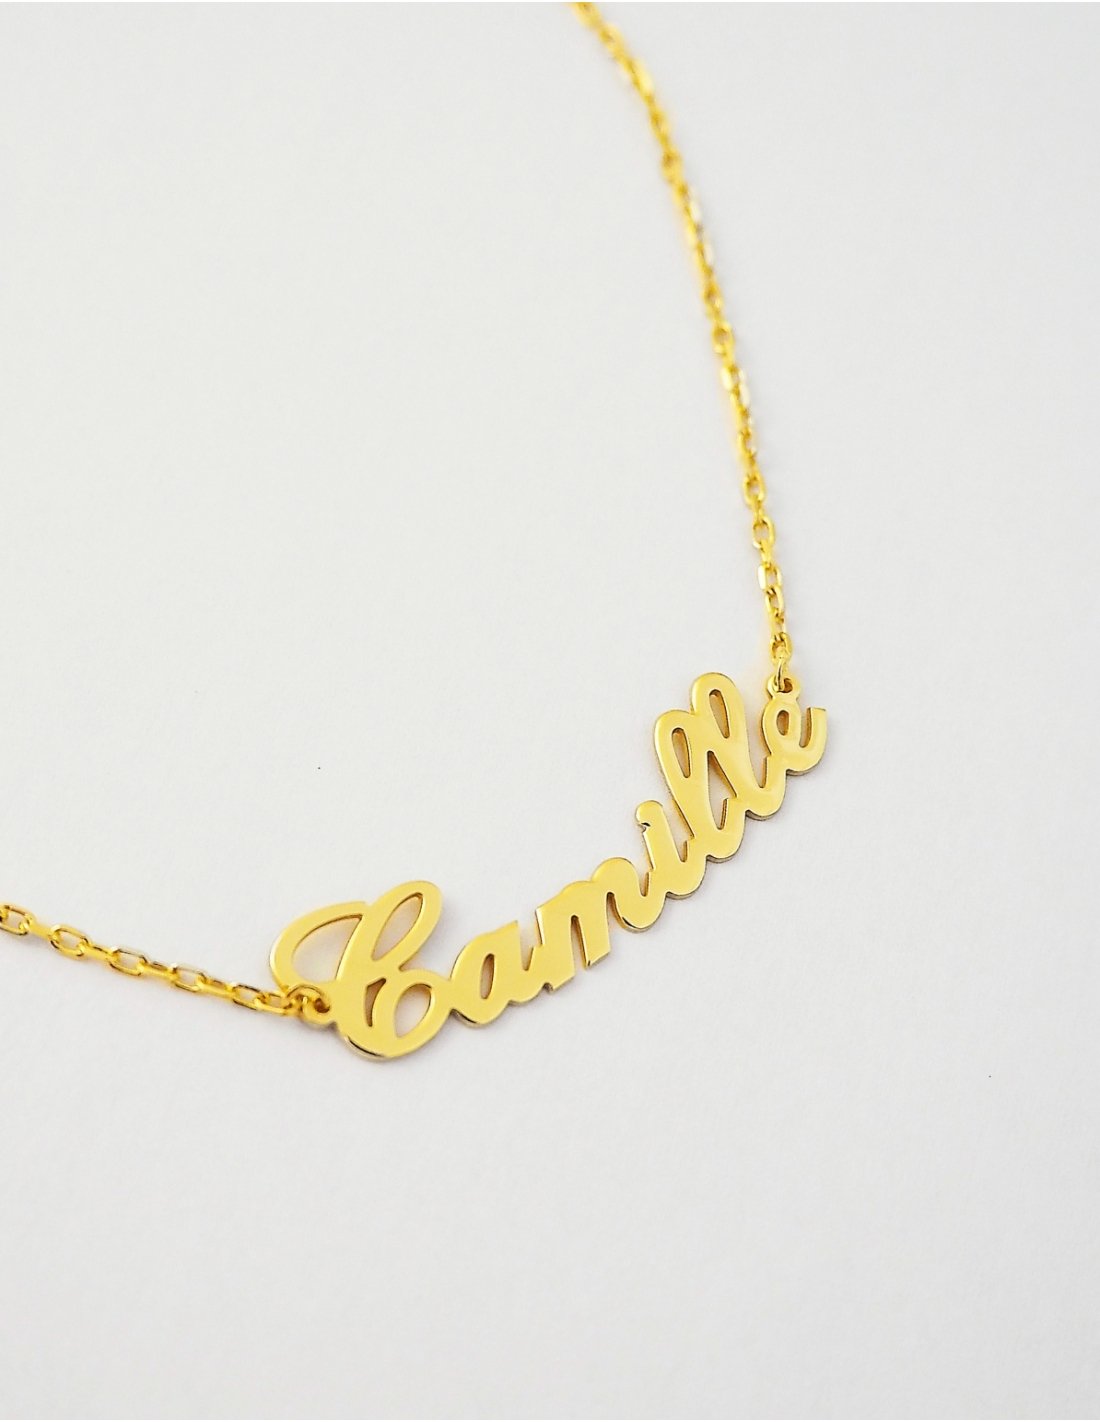 Bracelet en or jaune, maille anglaise, 5,4 mm : Longueur - 18 Femme - Le  Manège à Bijoux®